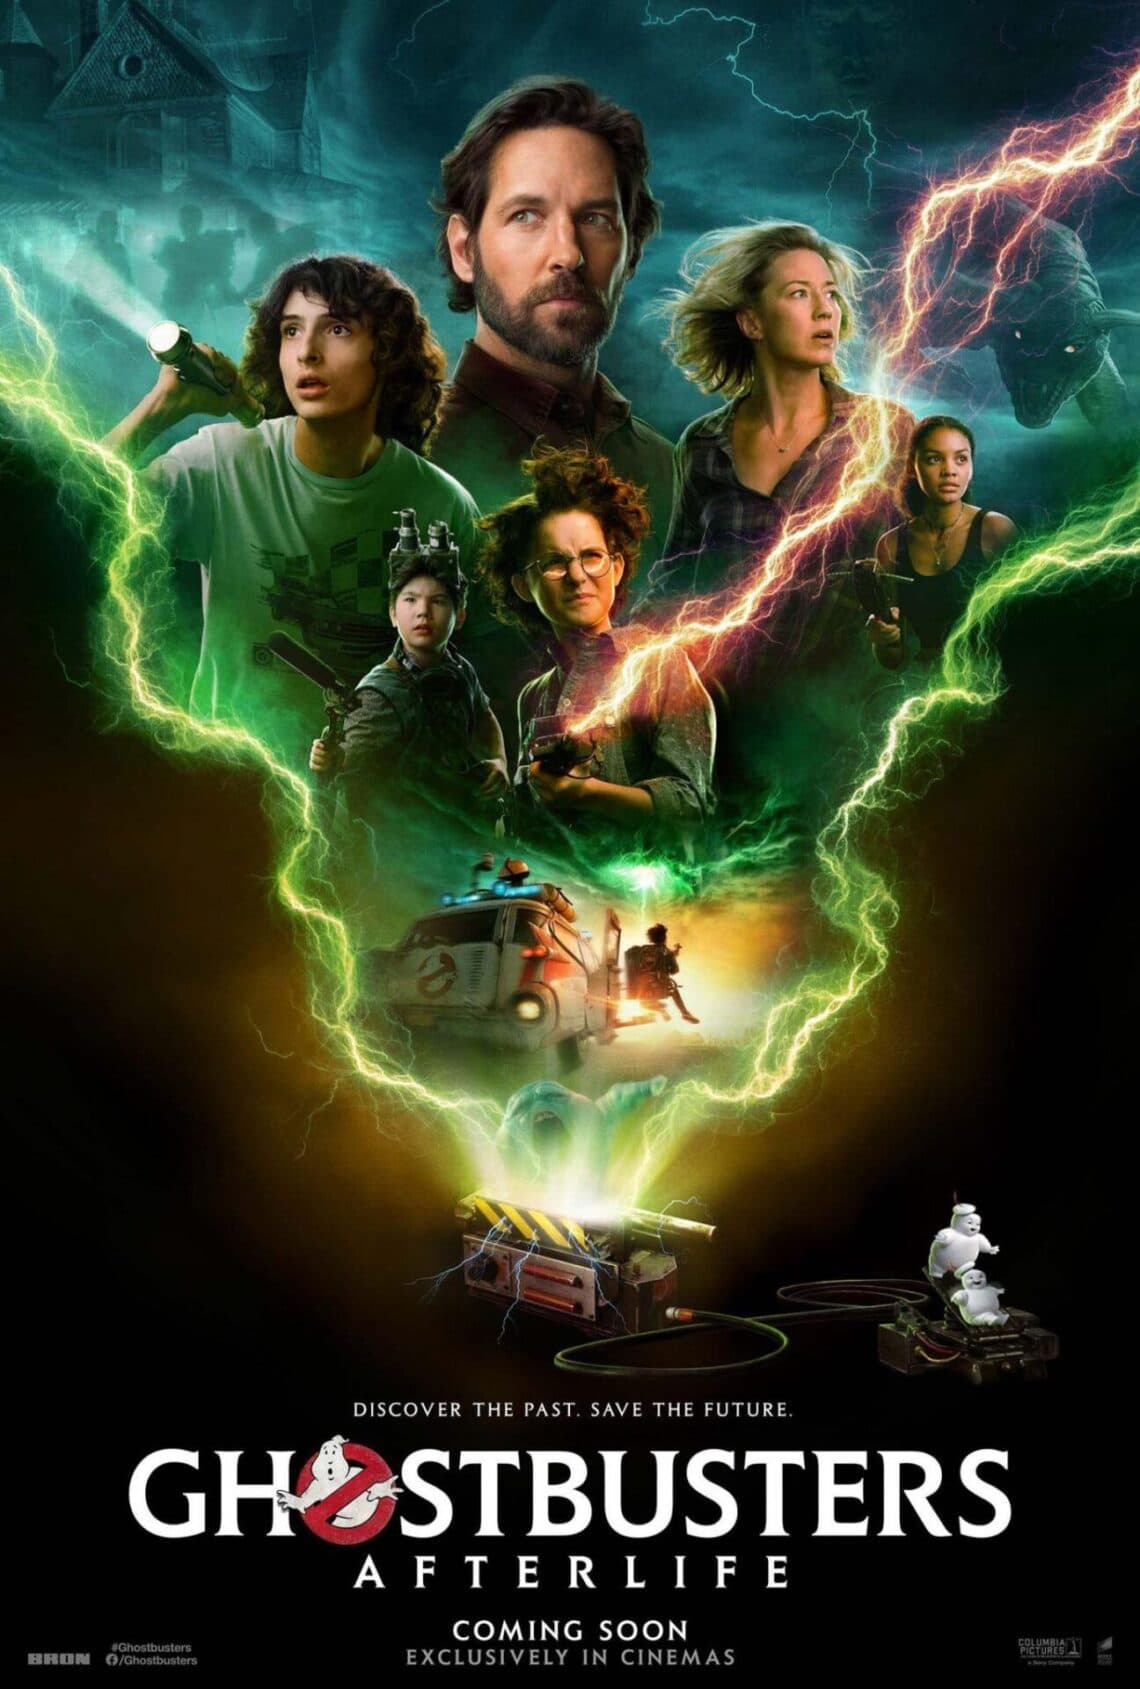 Ghostbusters Mais Alem Sony Pictures divulga trailer internacional com cenas ineditas e poster